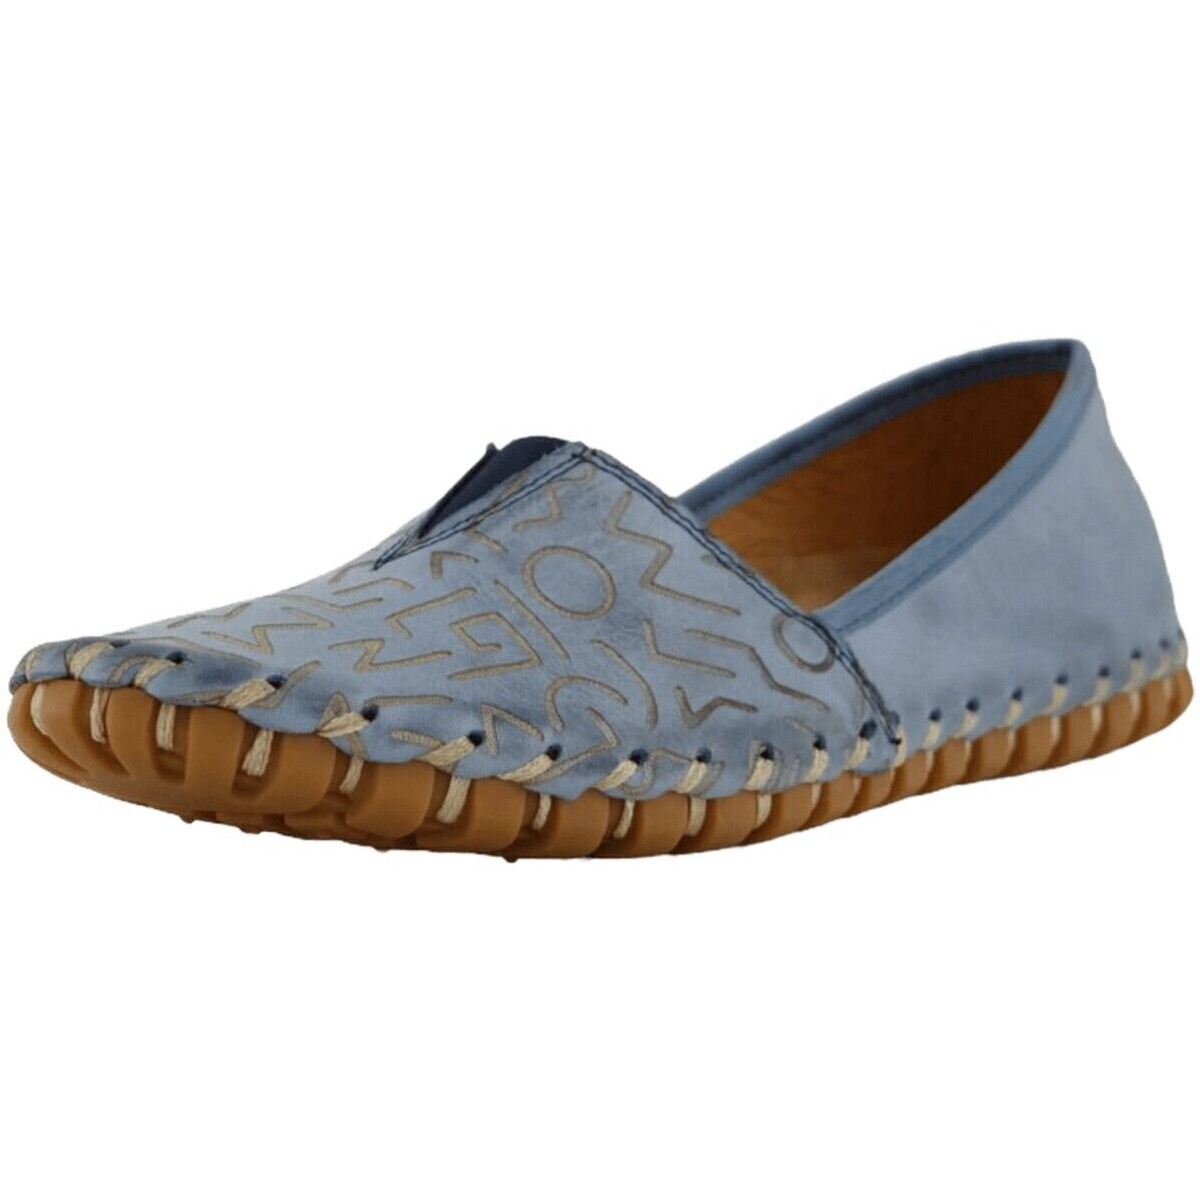 Schuhe Damen Slipper Gemini Slipper 03116502/808 Blau